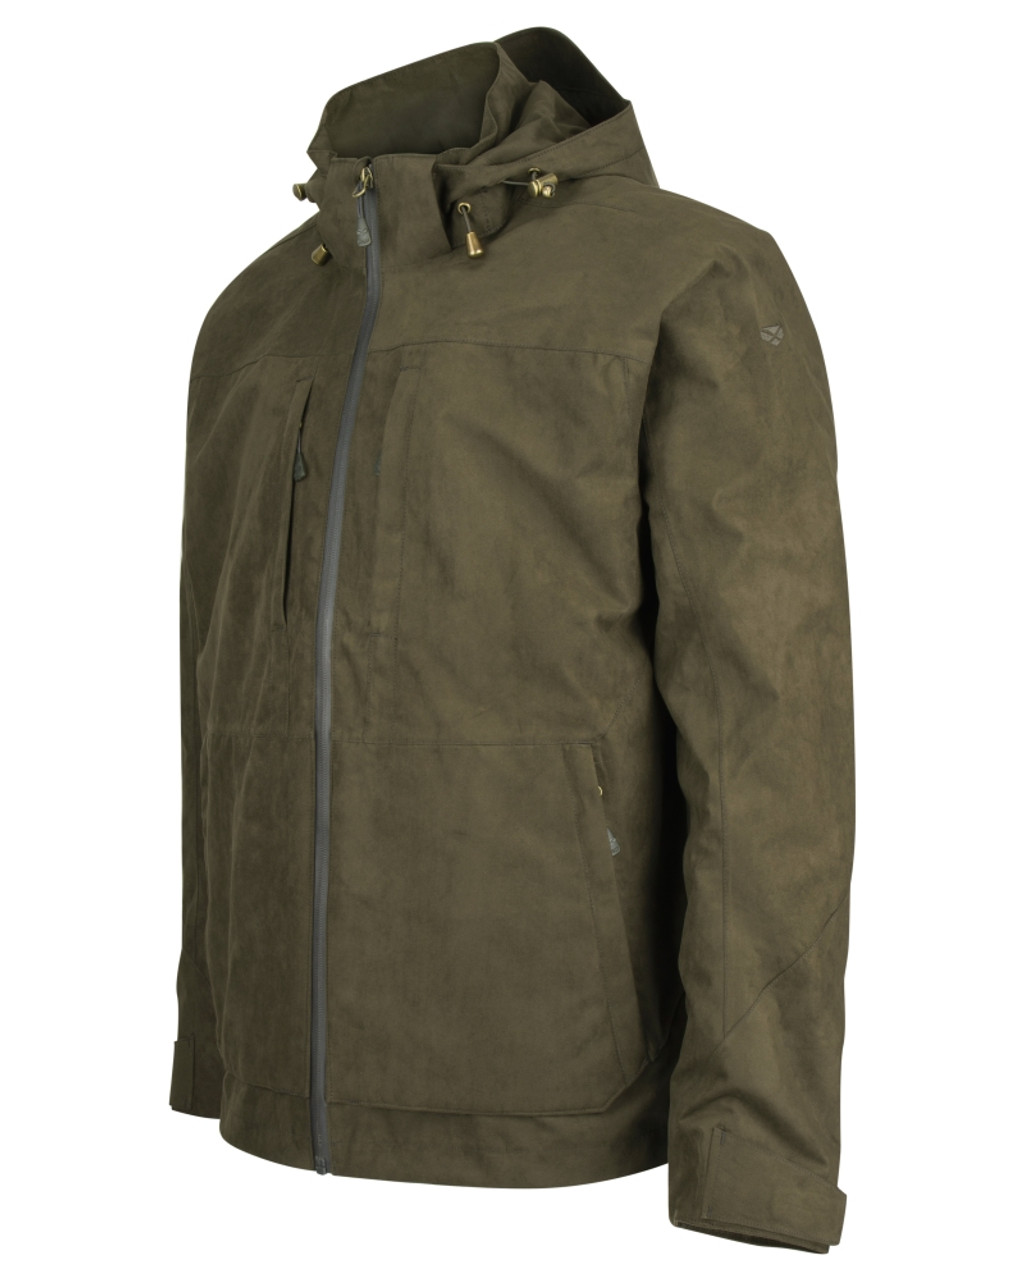 Hoggs of Fife waterproof jacket